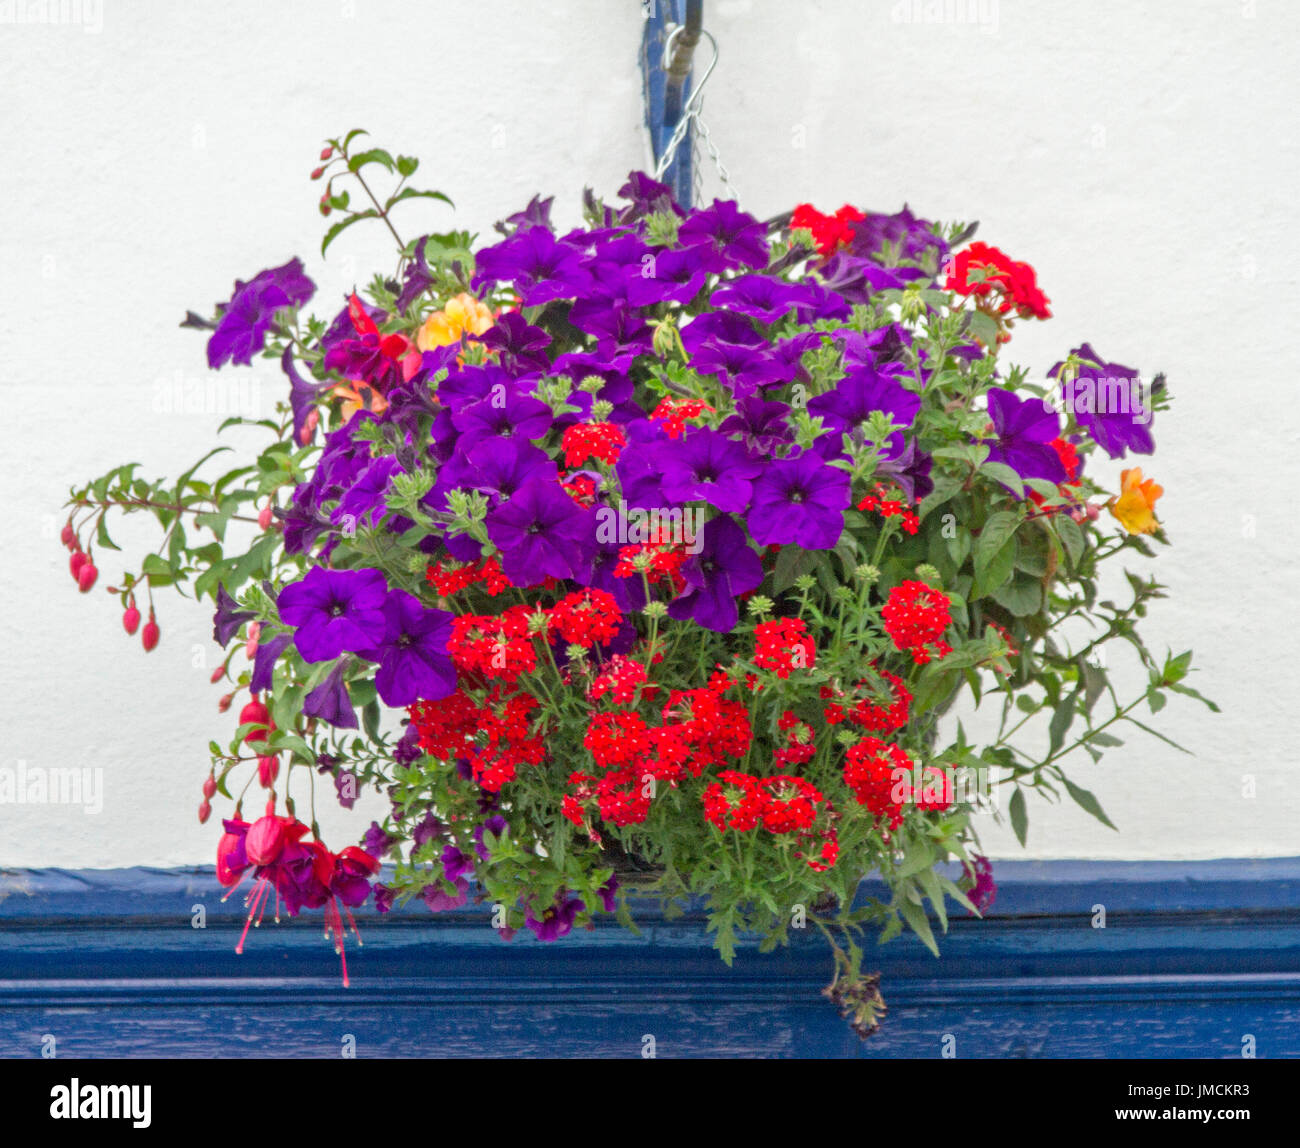 Massa di fiori vivaci, compresi rosso verbena, viola luminoso nelle petunie, e rosso fuchsias, nel cesto appeso contro il muro bianco Foto Stock